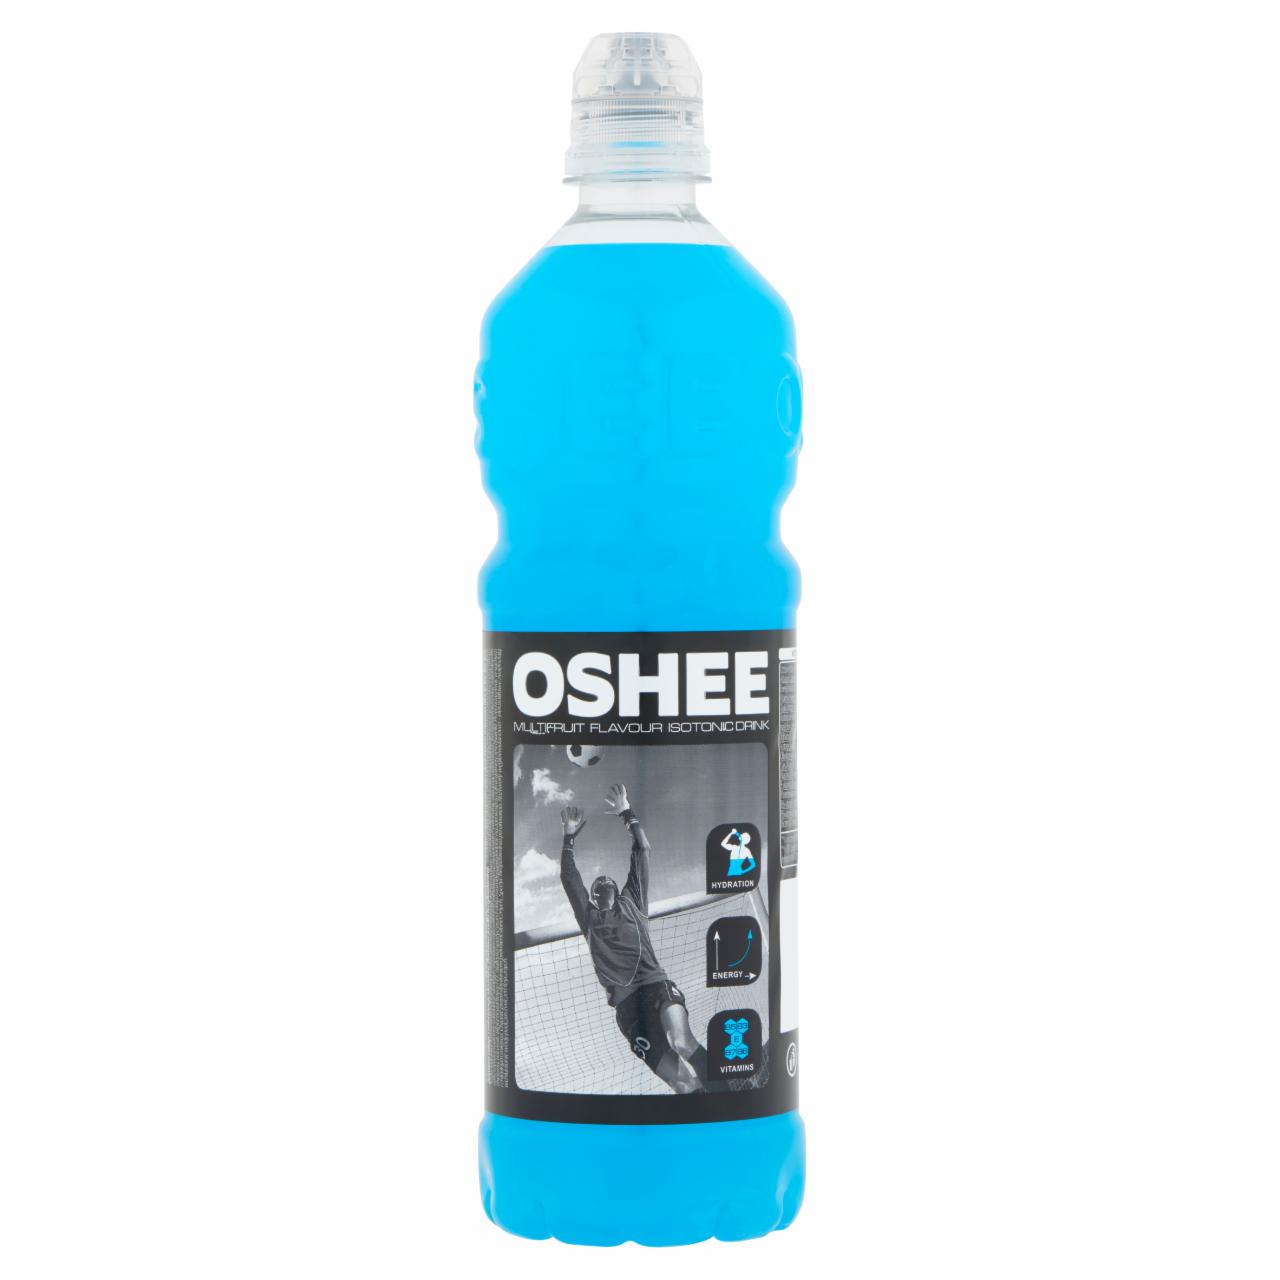 Képek - Oshee szénsavmentes vegyes gyümölcs ízesítésű ital hozzáadott vitaminokkal 0,75 l